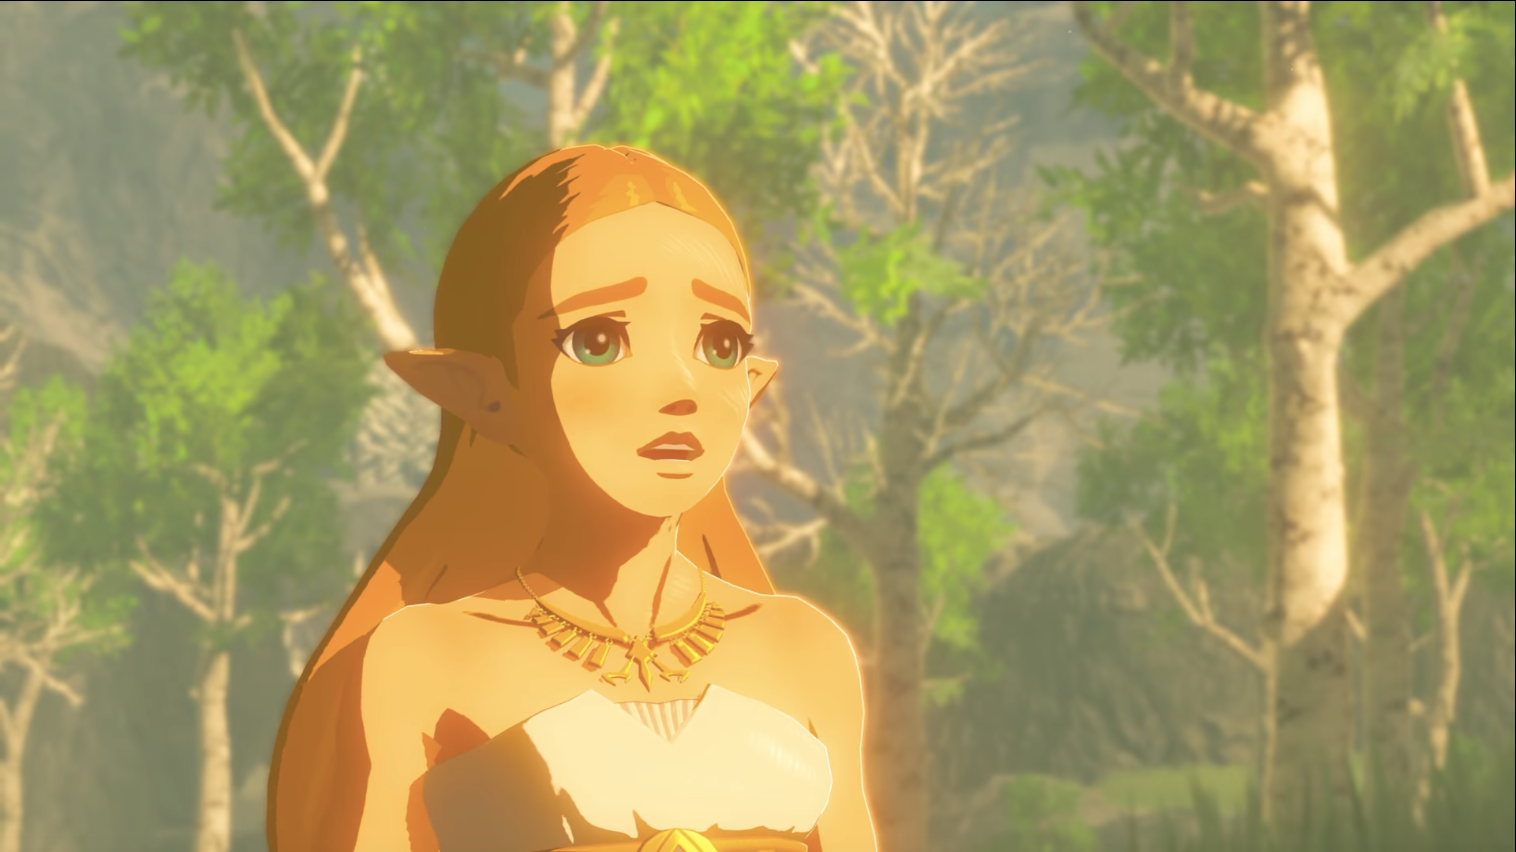 Princess Zelda in The Legend of Zelda: Breath of the Wild